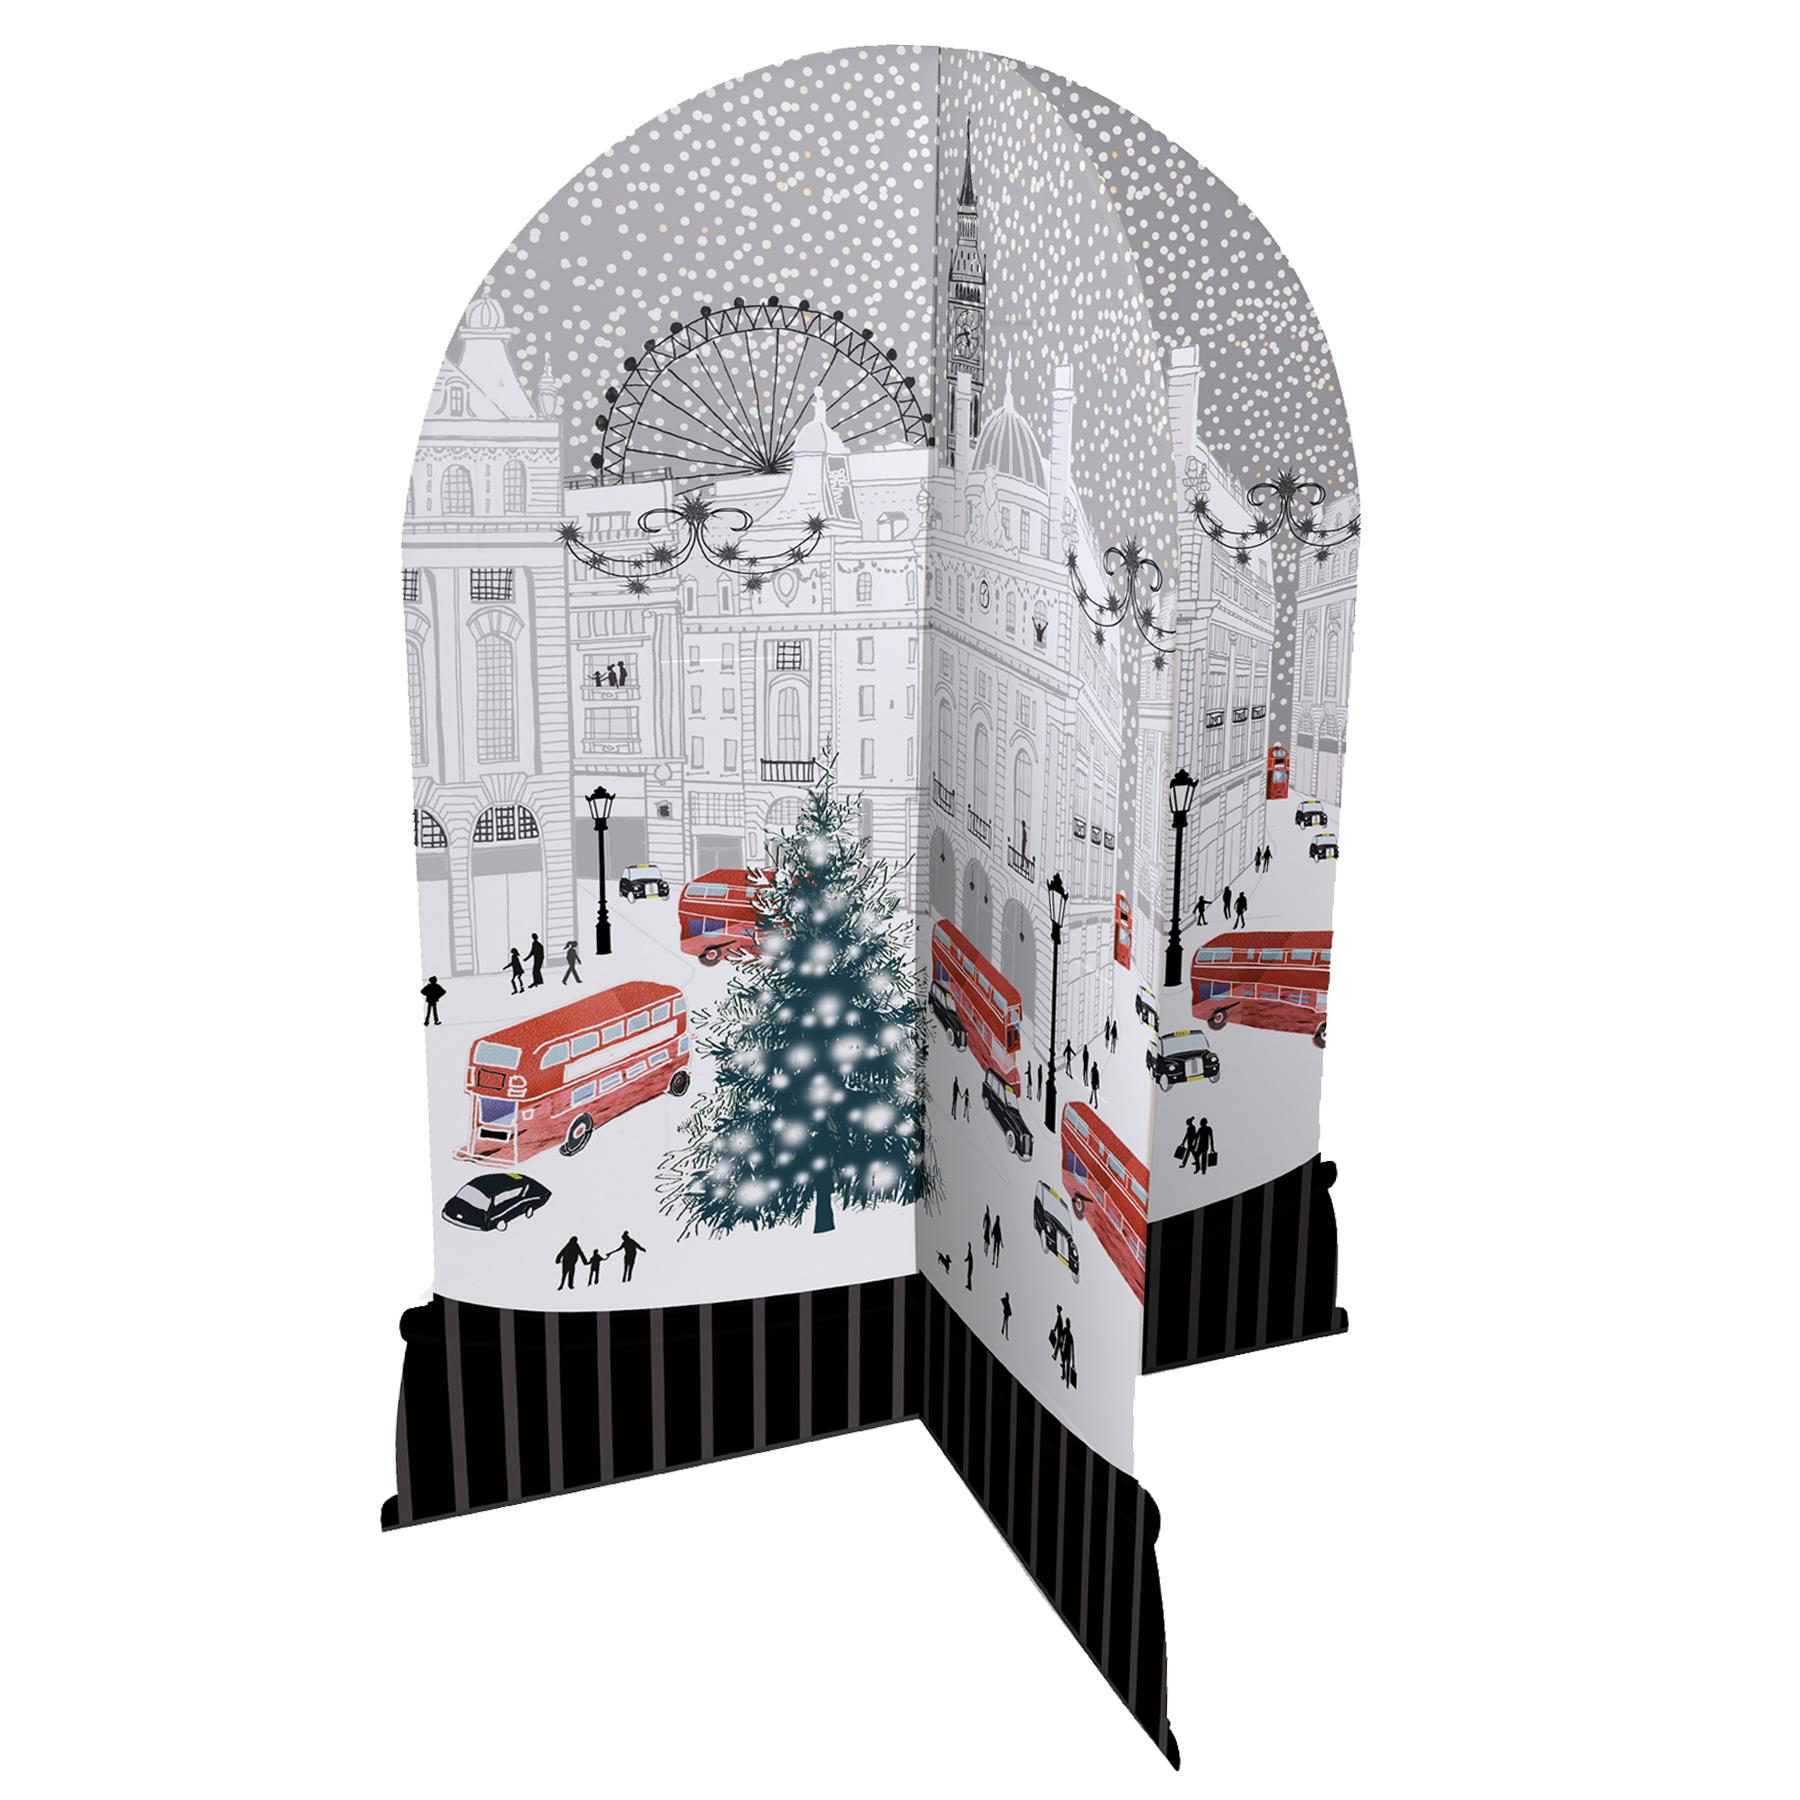 3D Christmas Advent Calendar with 24 Windows - London